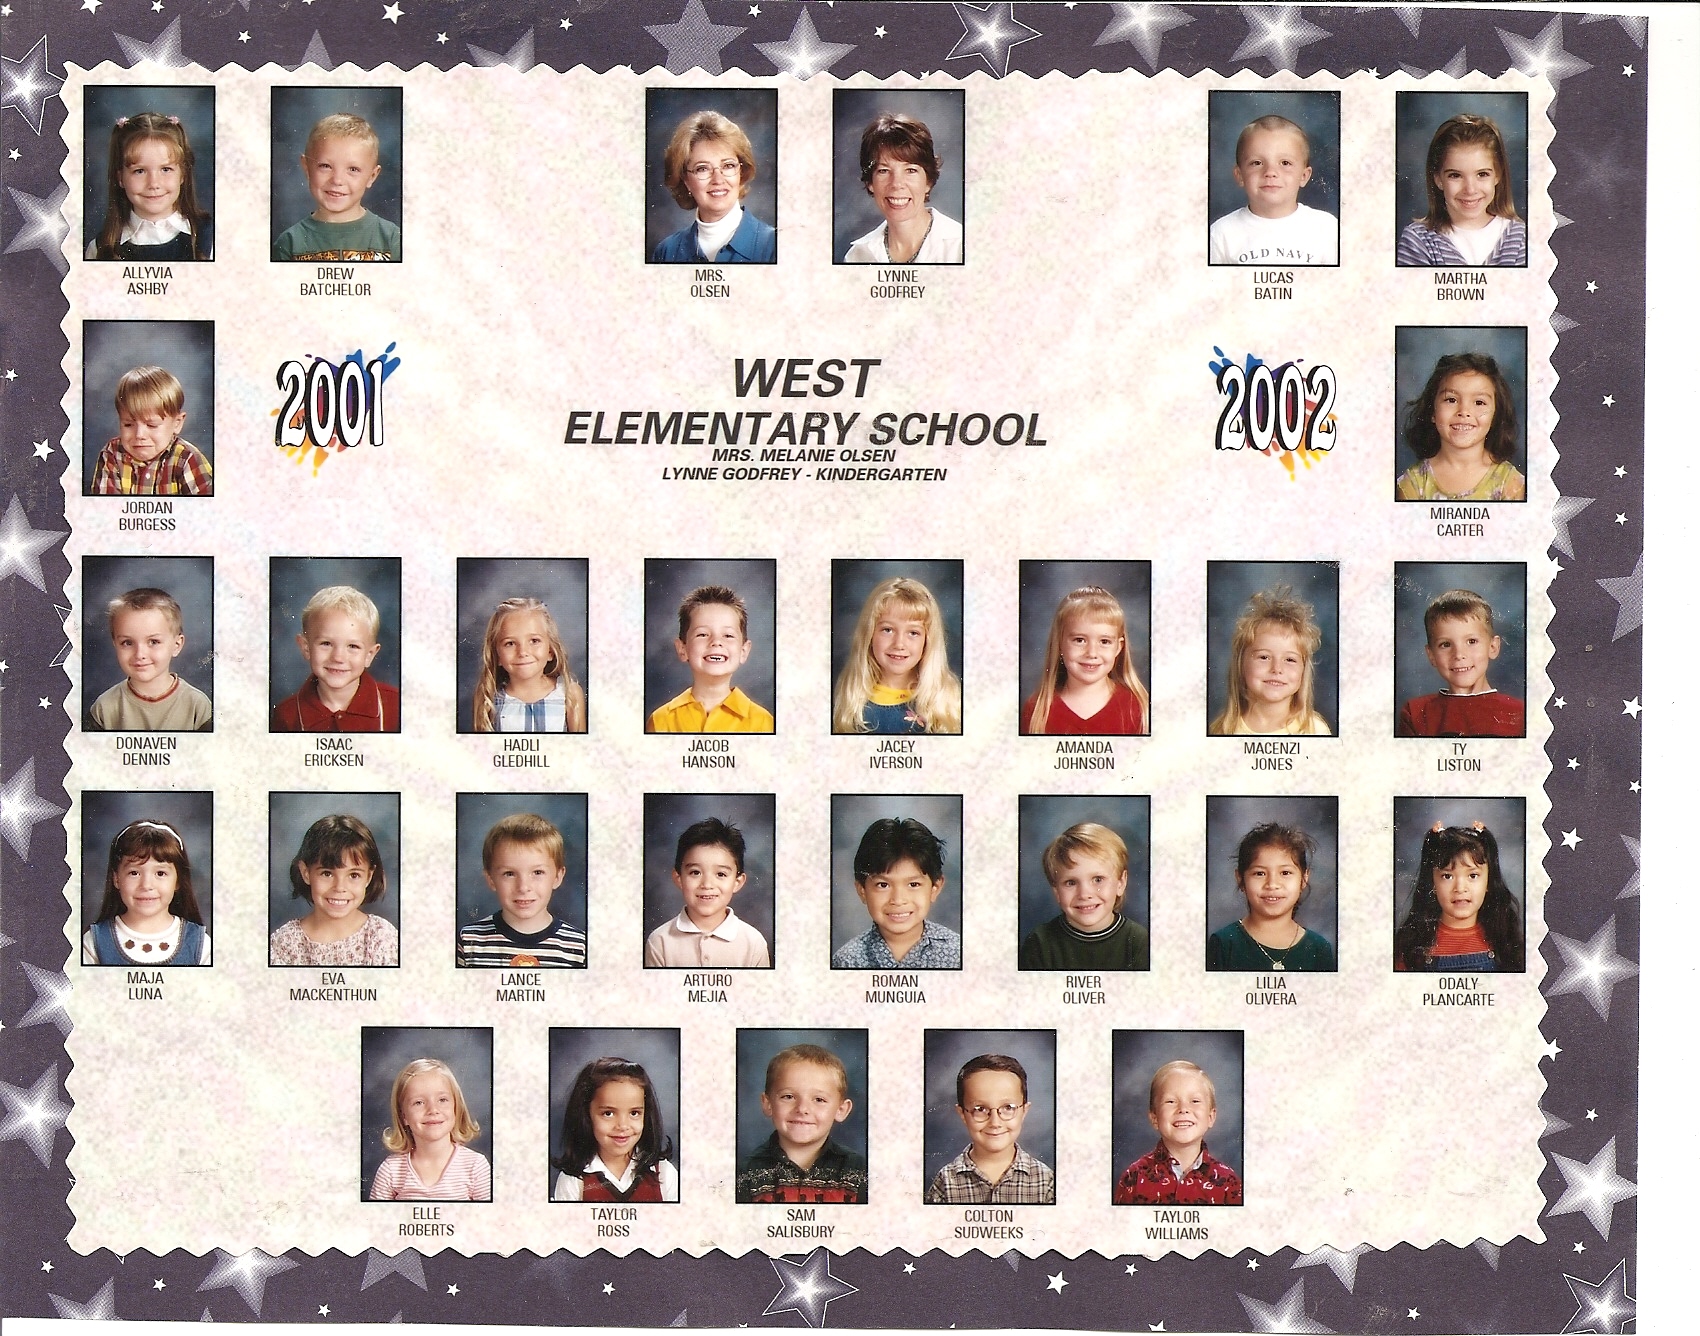 Mrs. Lynne Godfrey's 2001-2002 kindergarten class at West Elementary School